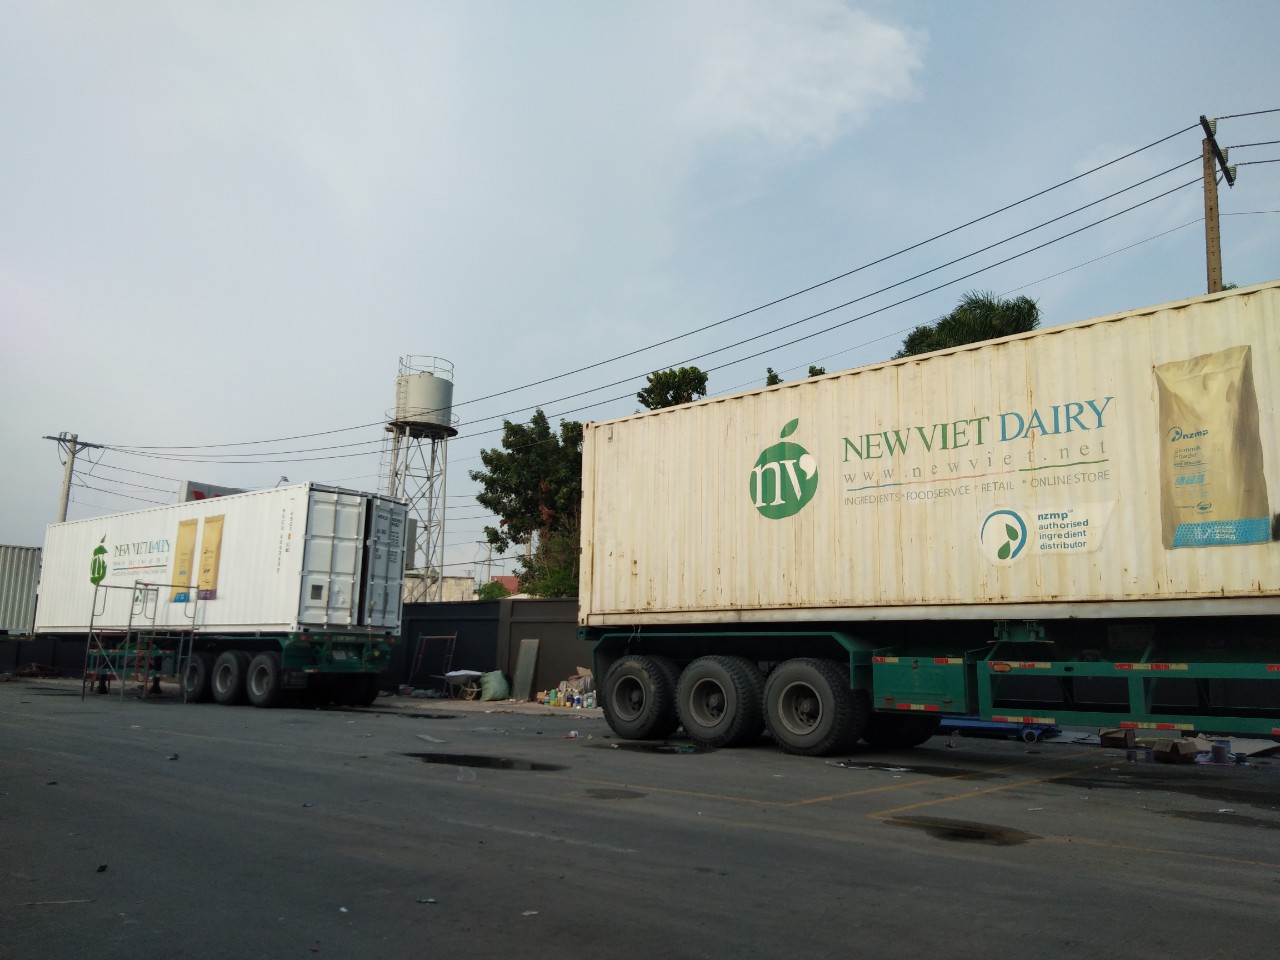 Tân cảng -Công ty Sữa New Việt Dairy